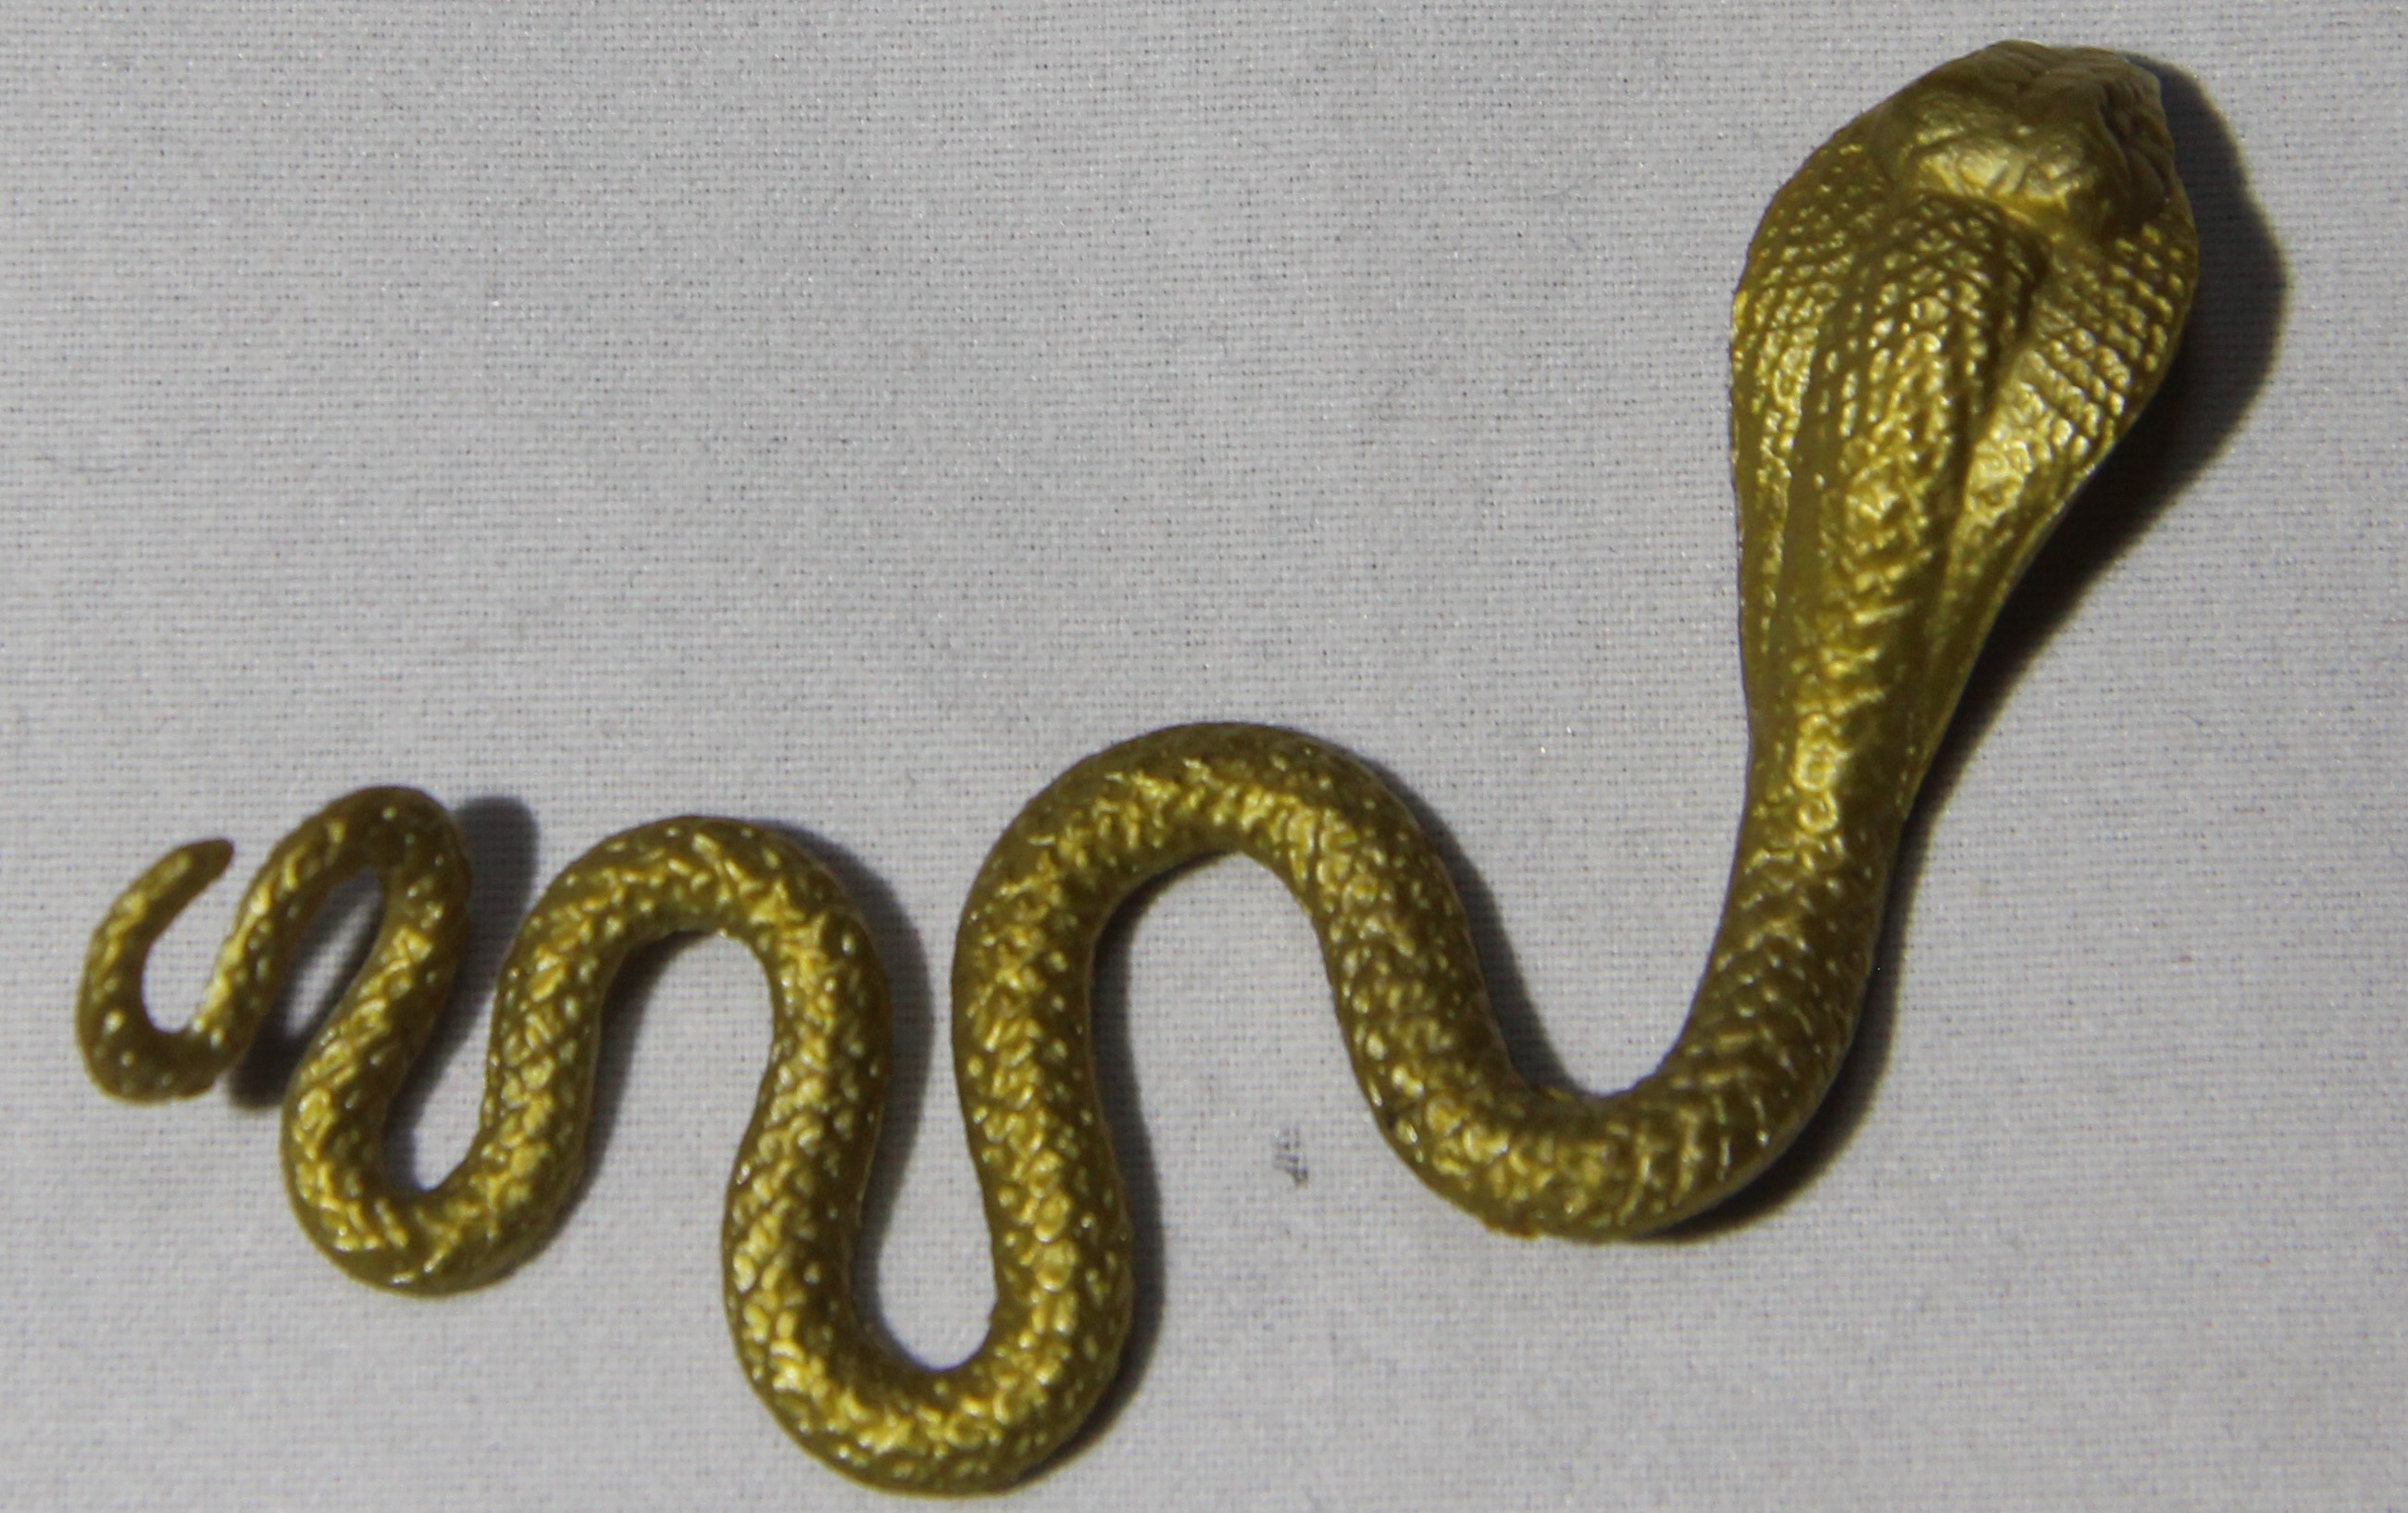 1986 Serpentor Gold Snake